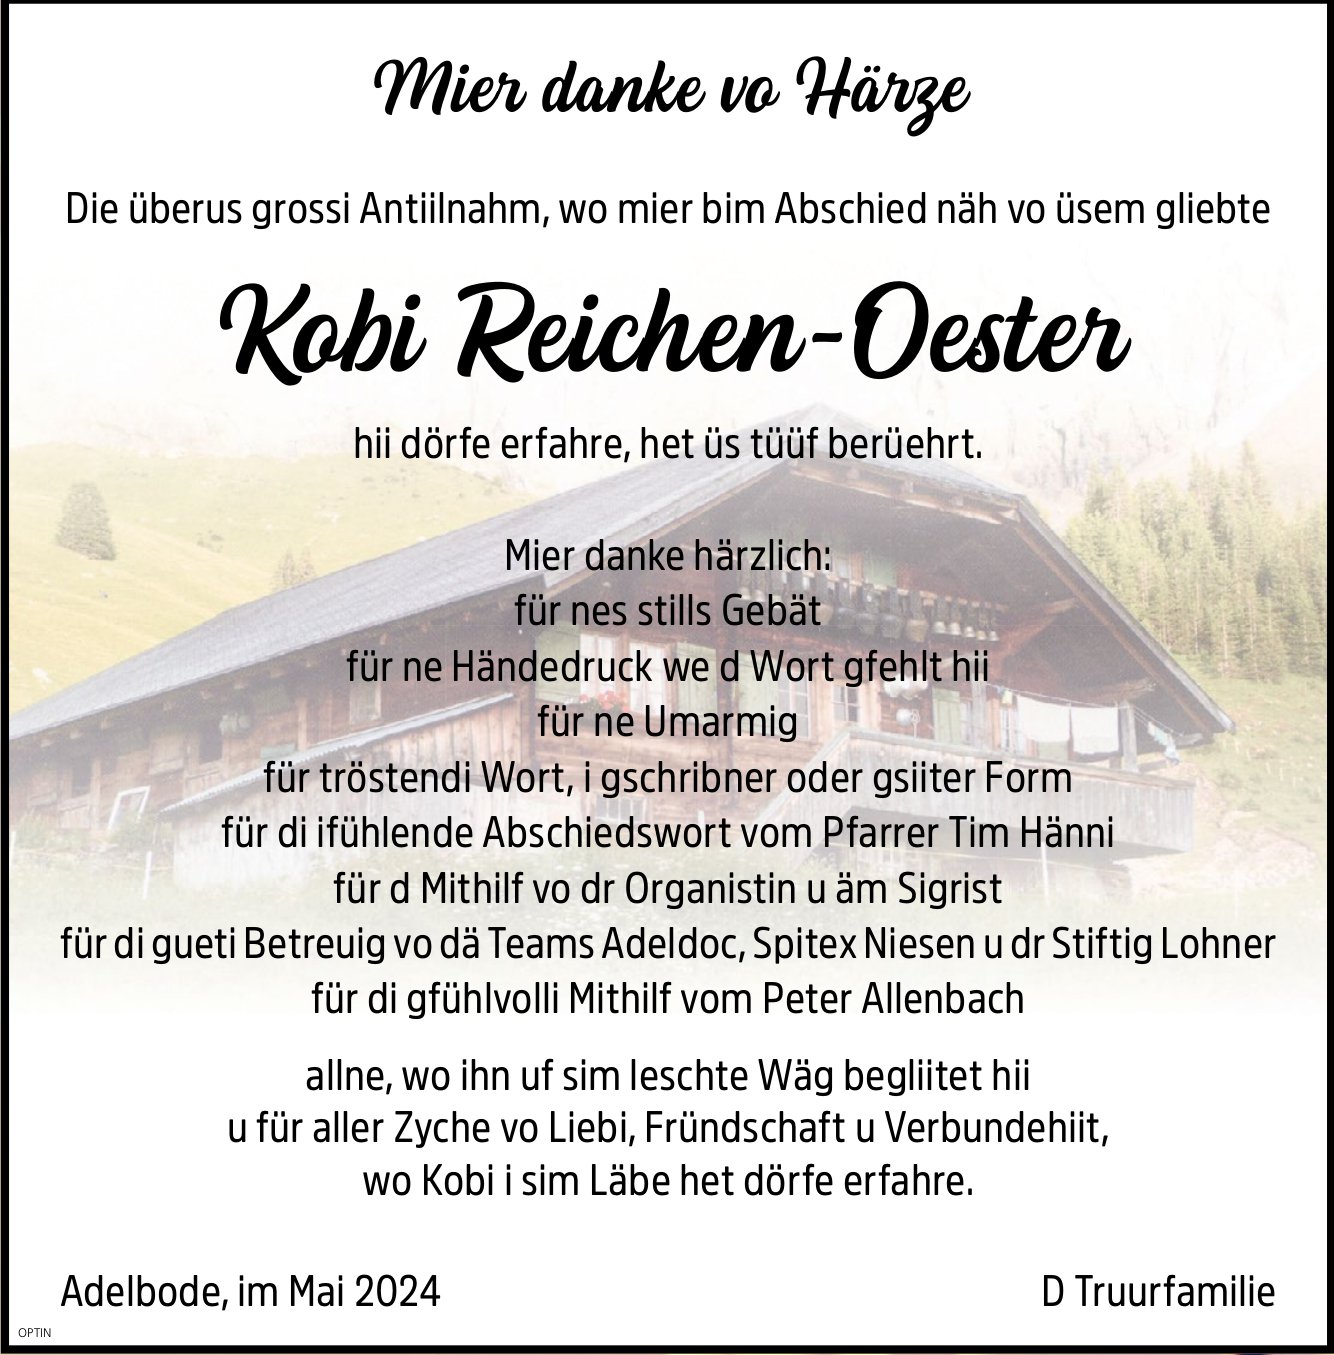 Kobi Reichen-Oester, im Mai 2024 / DS